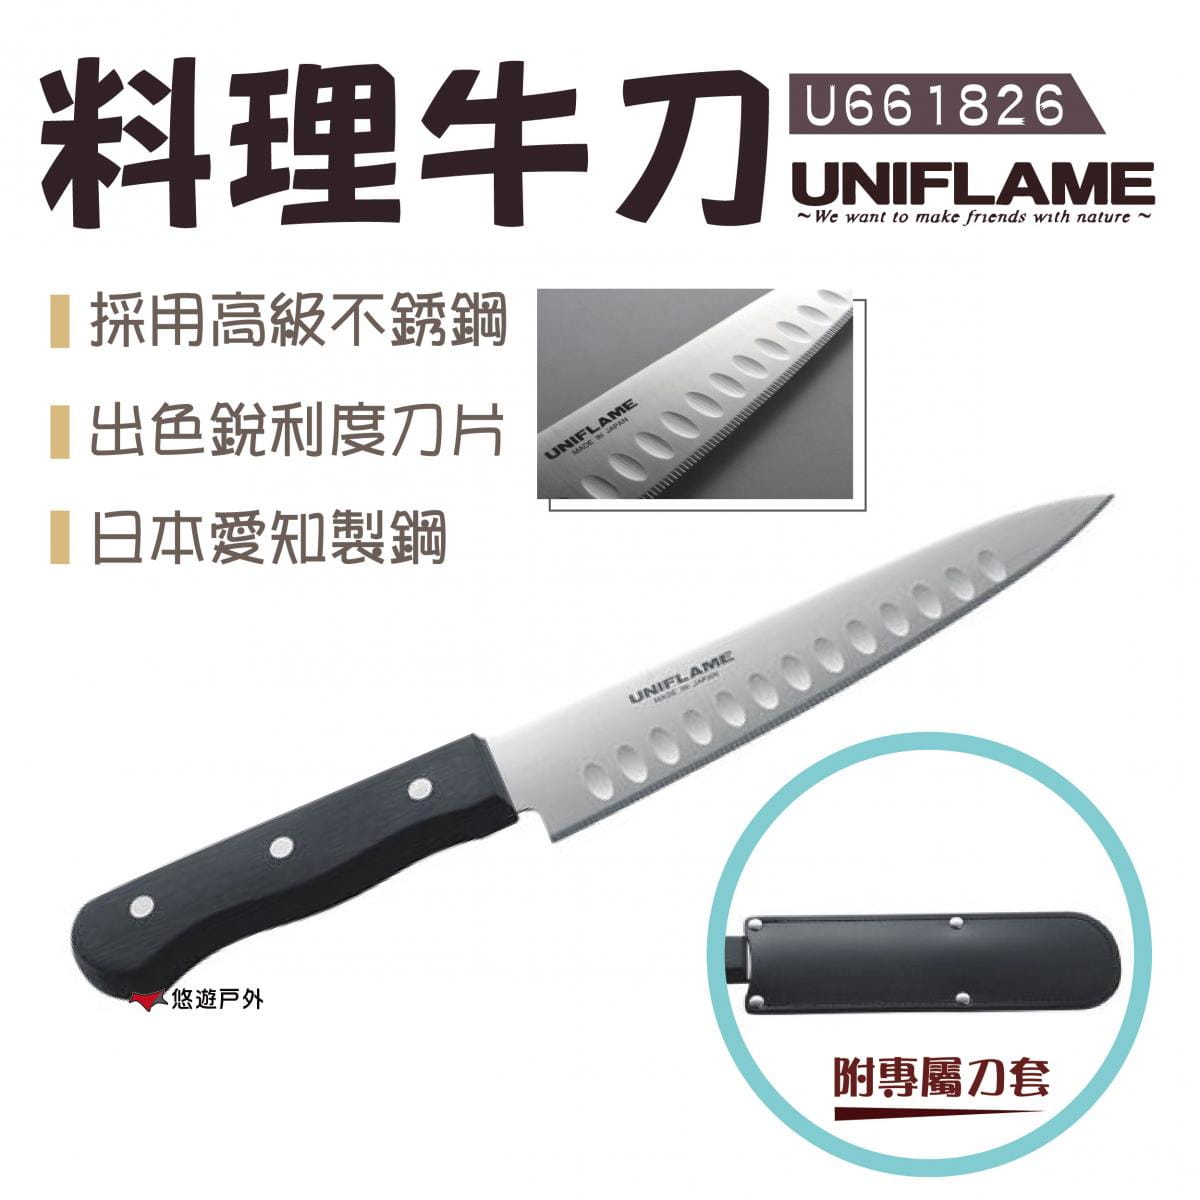 【日本UNIFLAME】料理牛刀 U661826 0